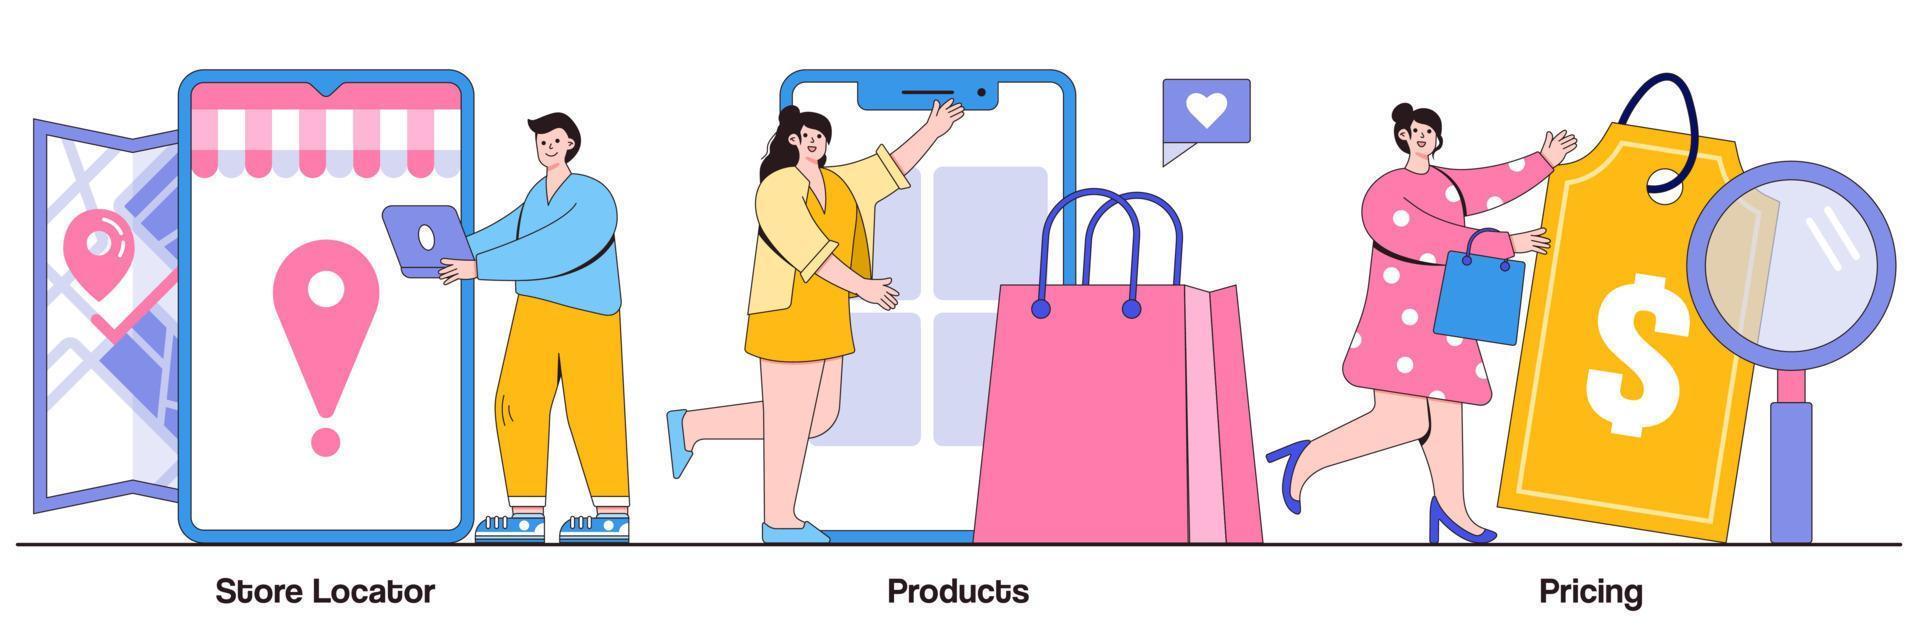 butikslokalisering, produkt, priskoncept med små människor. e-handel webbplats vektor illustration set. webbplatsens menyrad, hitta oss, tjänstekatalog, butik, online shopping, önskelista metafor